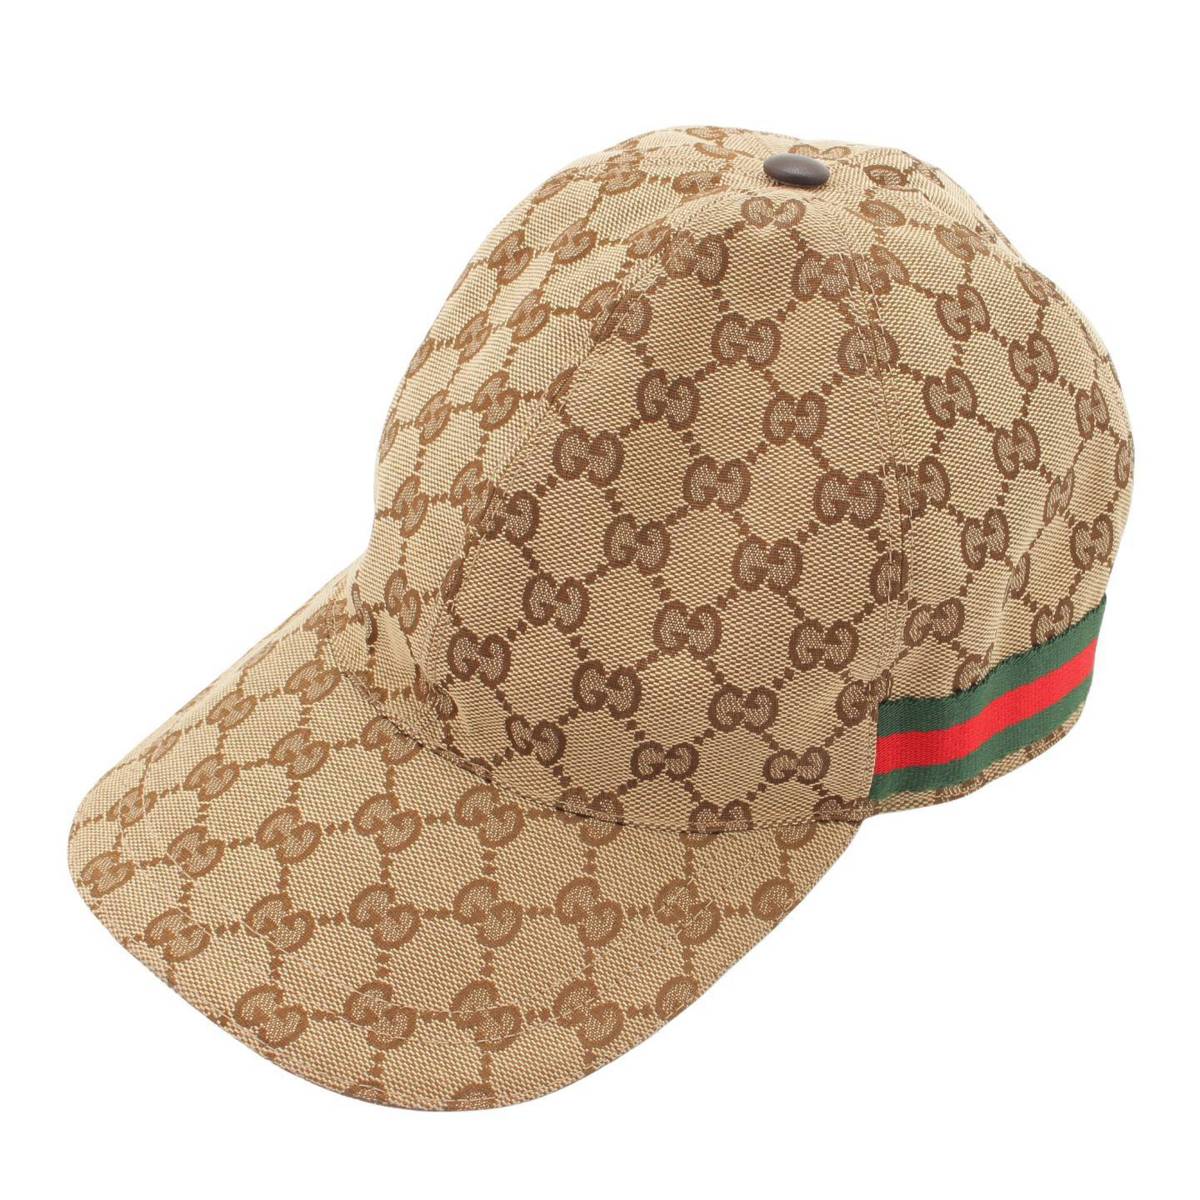 グッチ(Gucci) GGキャンバス 総柄 ベースボールキャップ 帽子 200035/601491 ベージュ